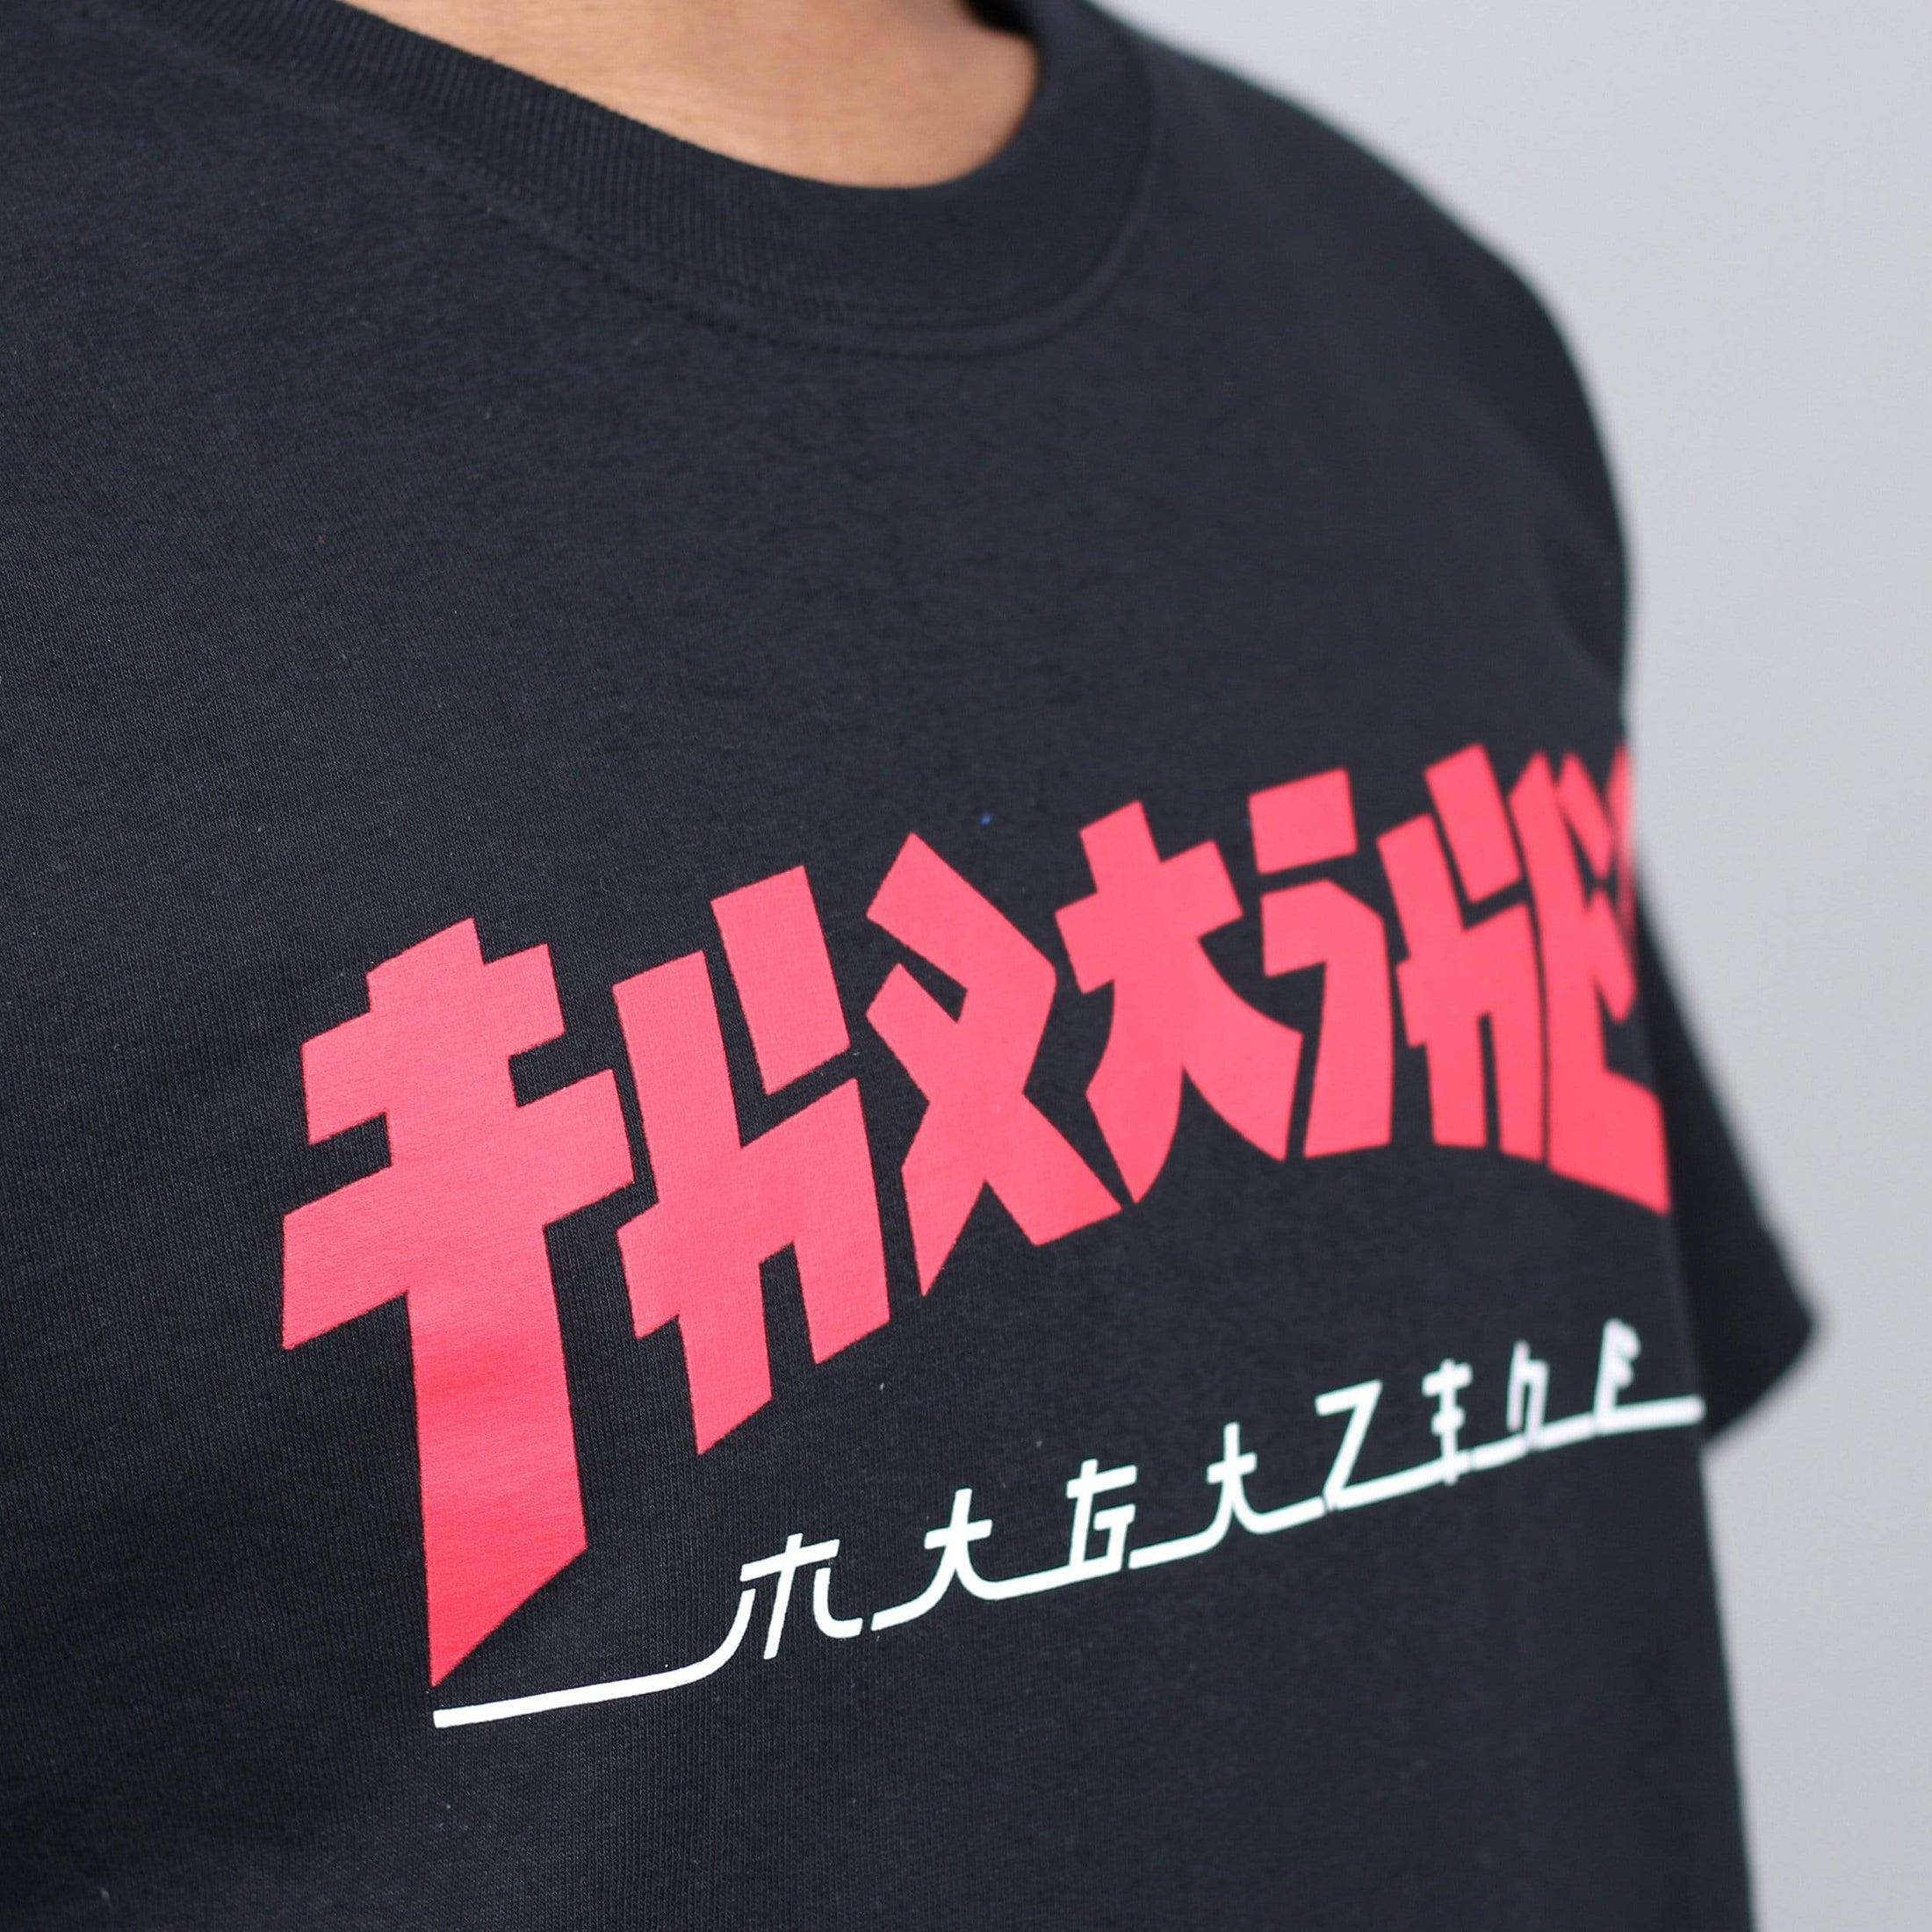 Thrasher Godzilla T-Shirt Black